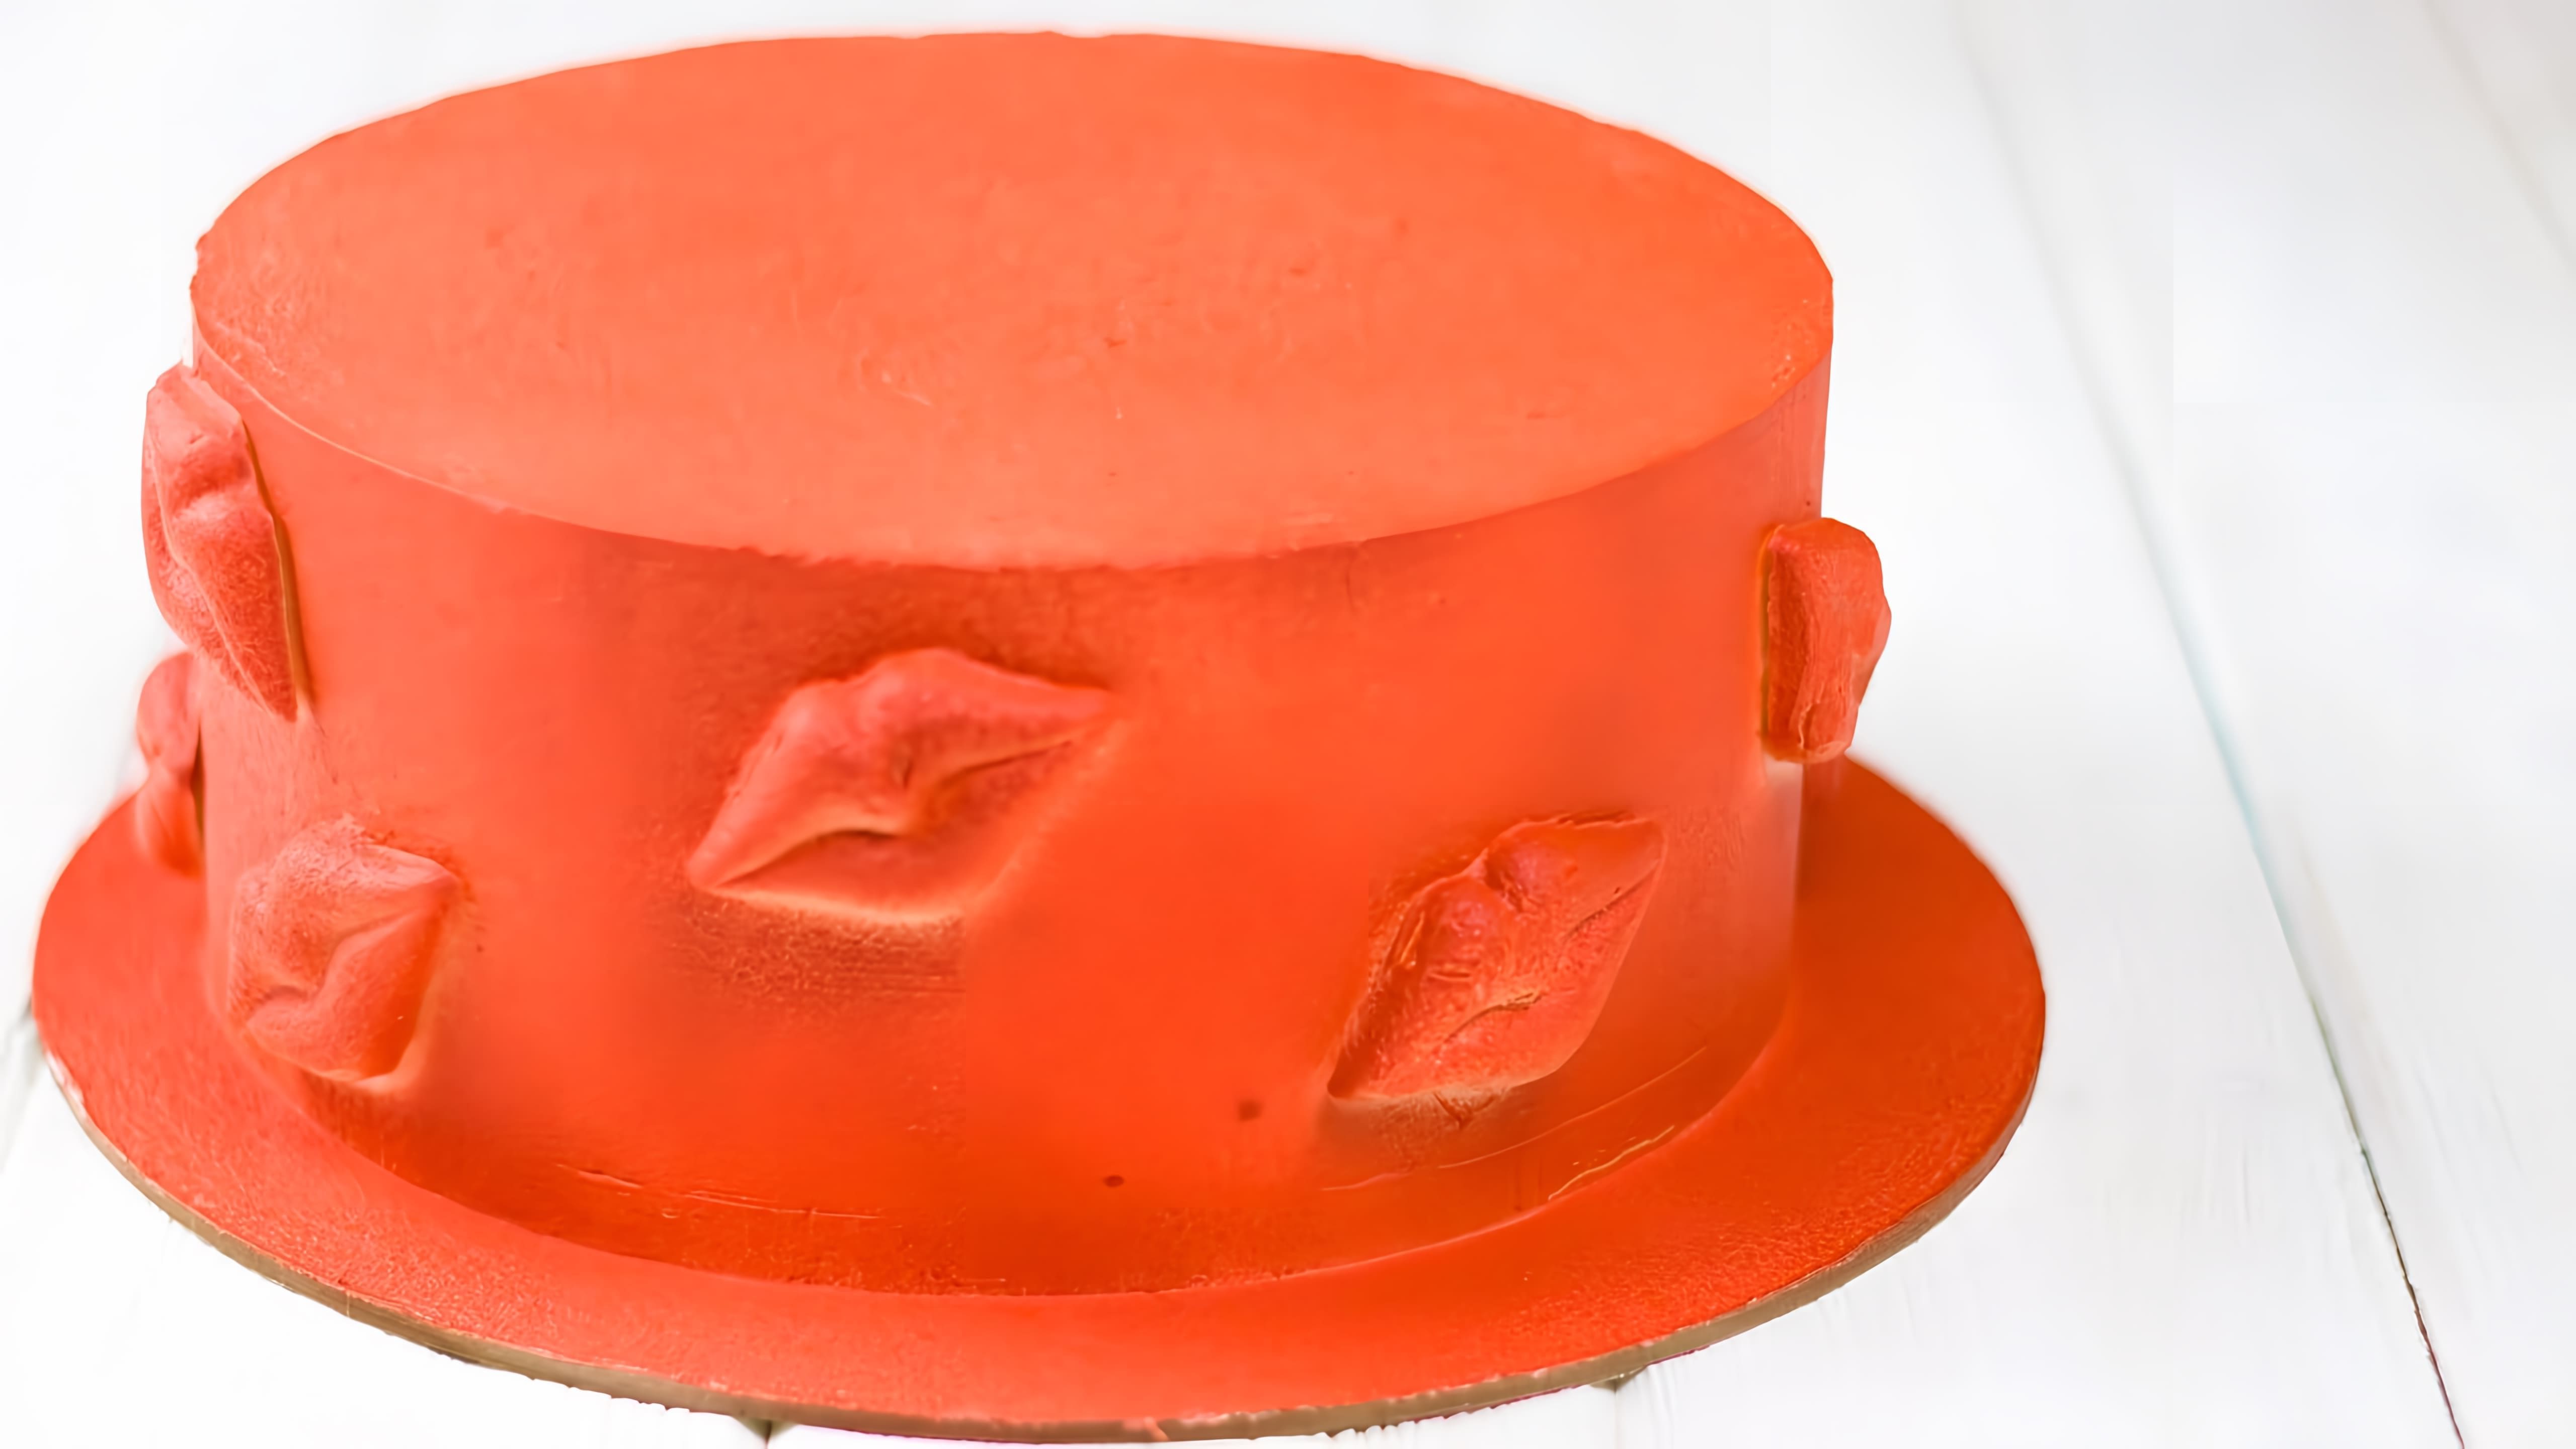 В этом видео показано, как украсить торт велюром без использования краскопульта